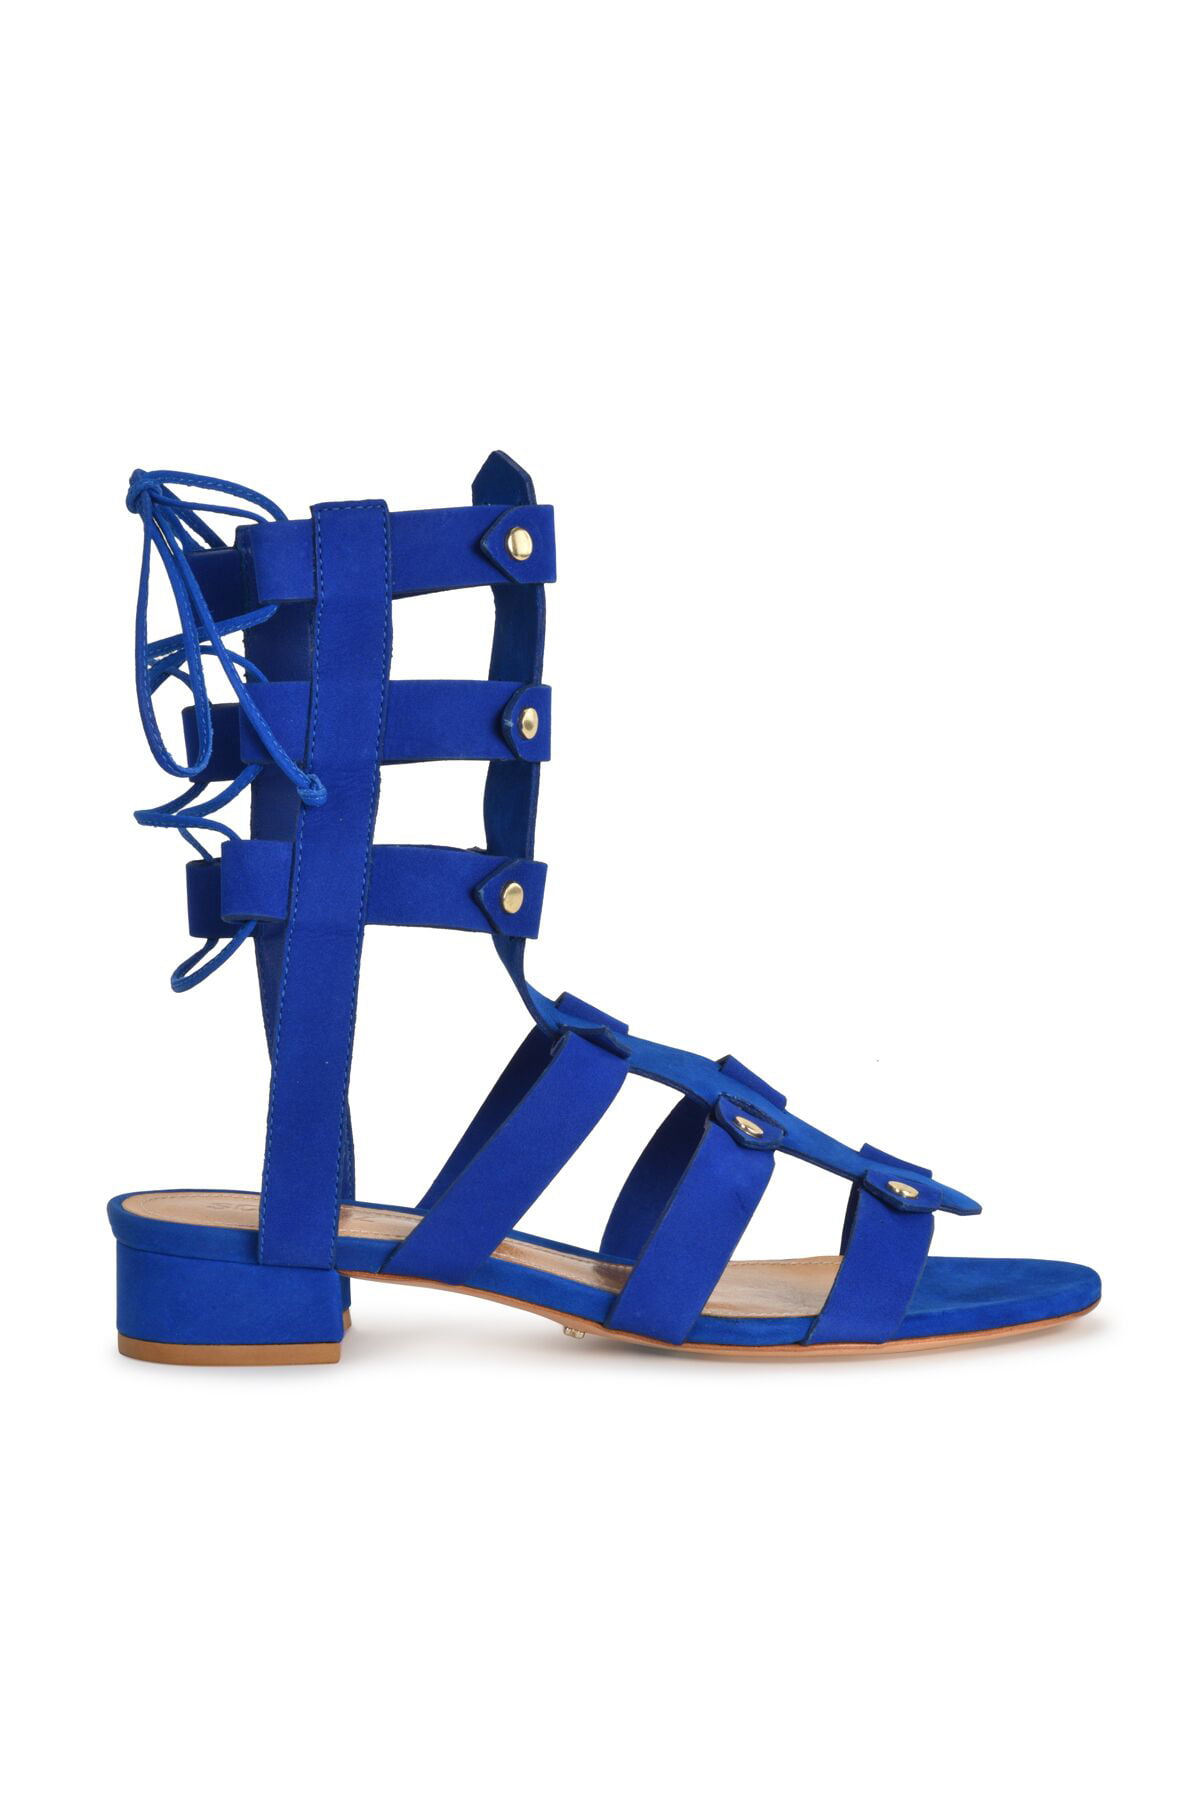 royal blue gladiator sandals